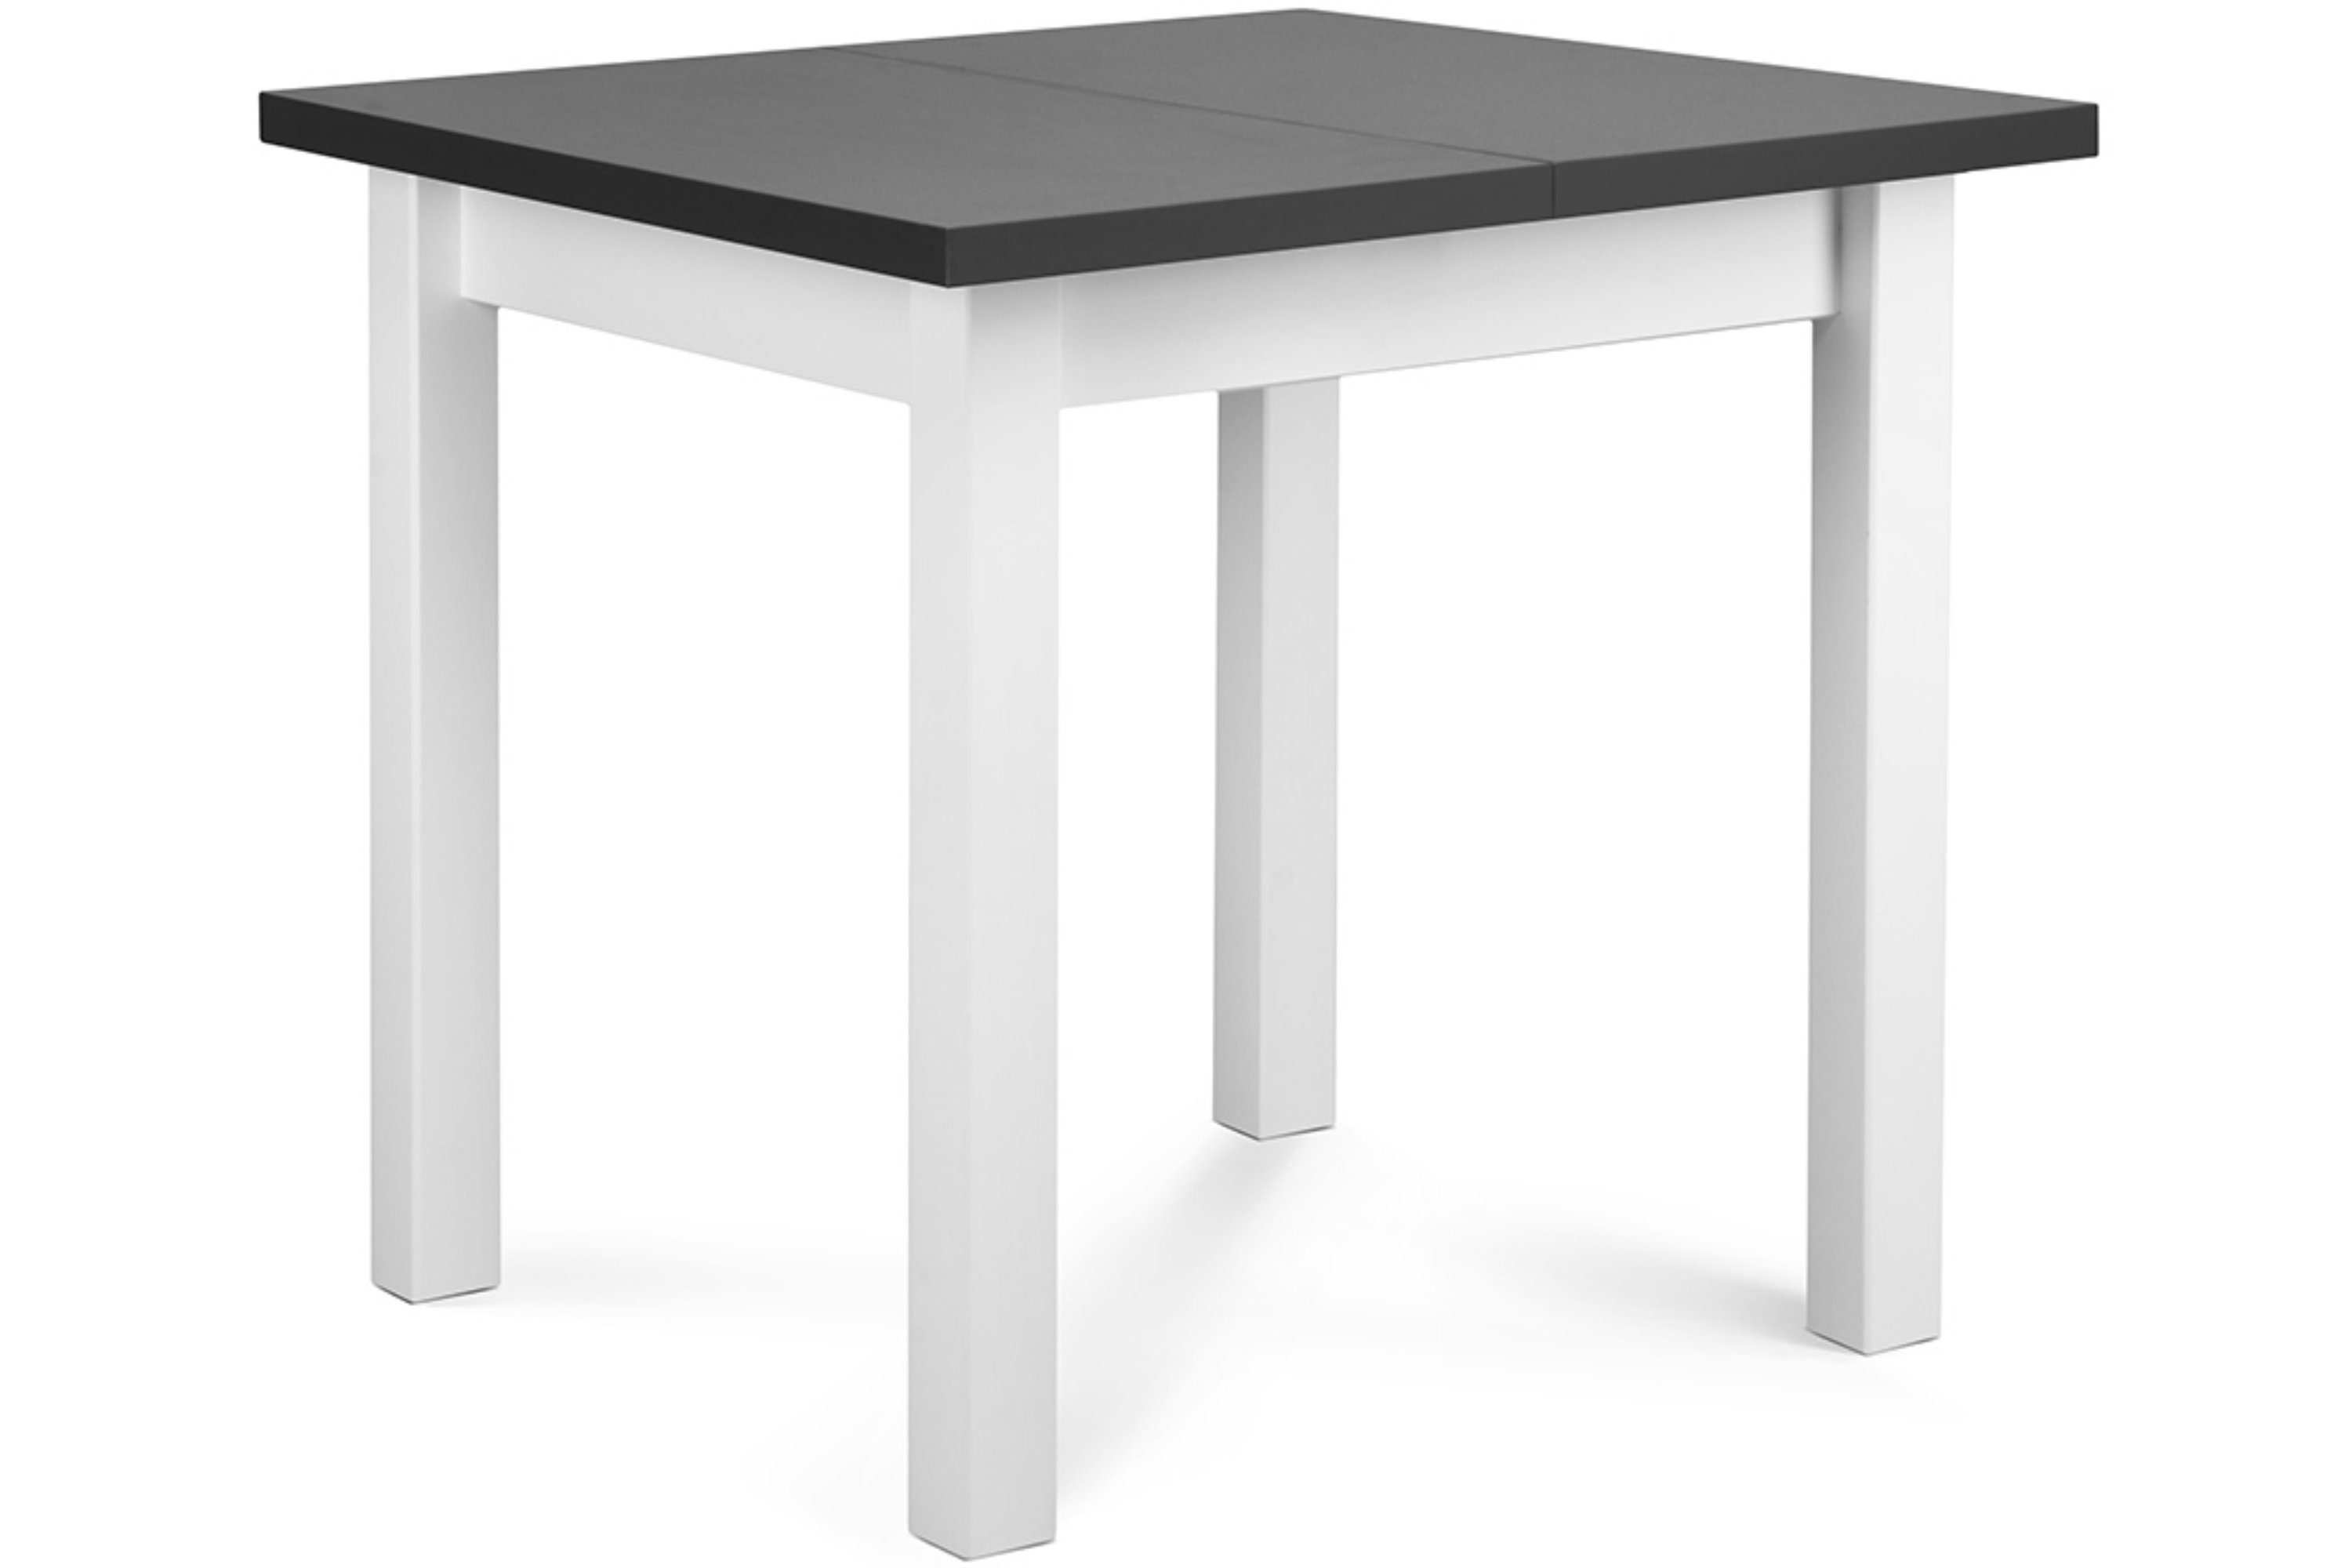 Konsimo Esstisch Küchentisch bis SALUTO | | 80x80cm, grau grau 110cm, weiß / ausziehbar weiß quadratisch Esszimmertisch